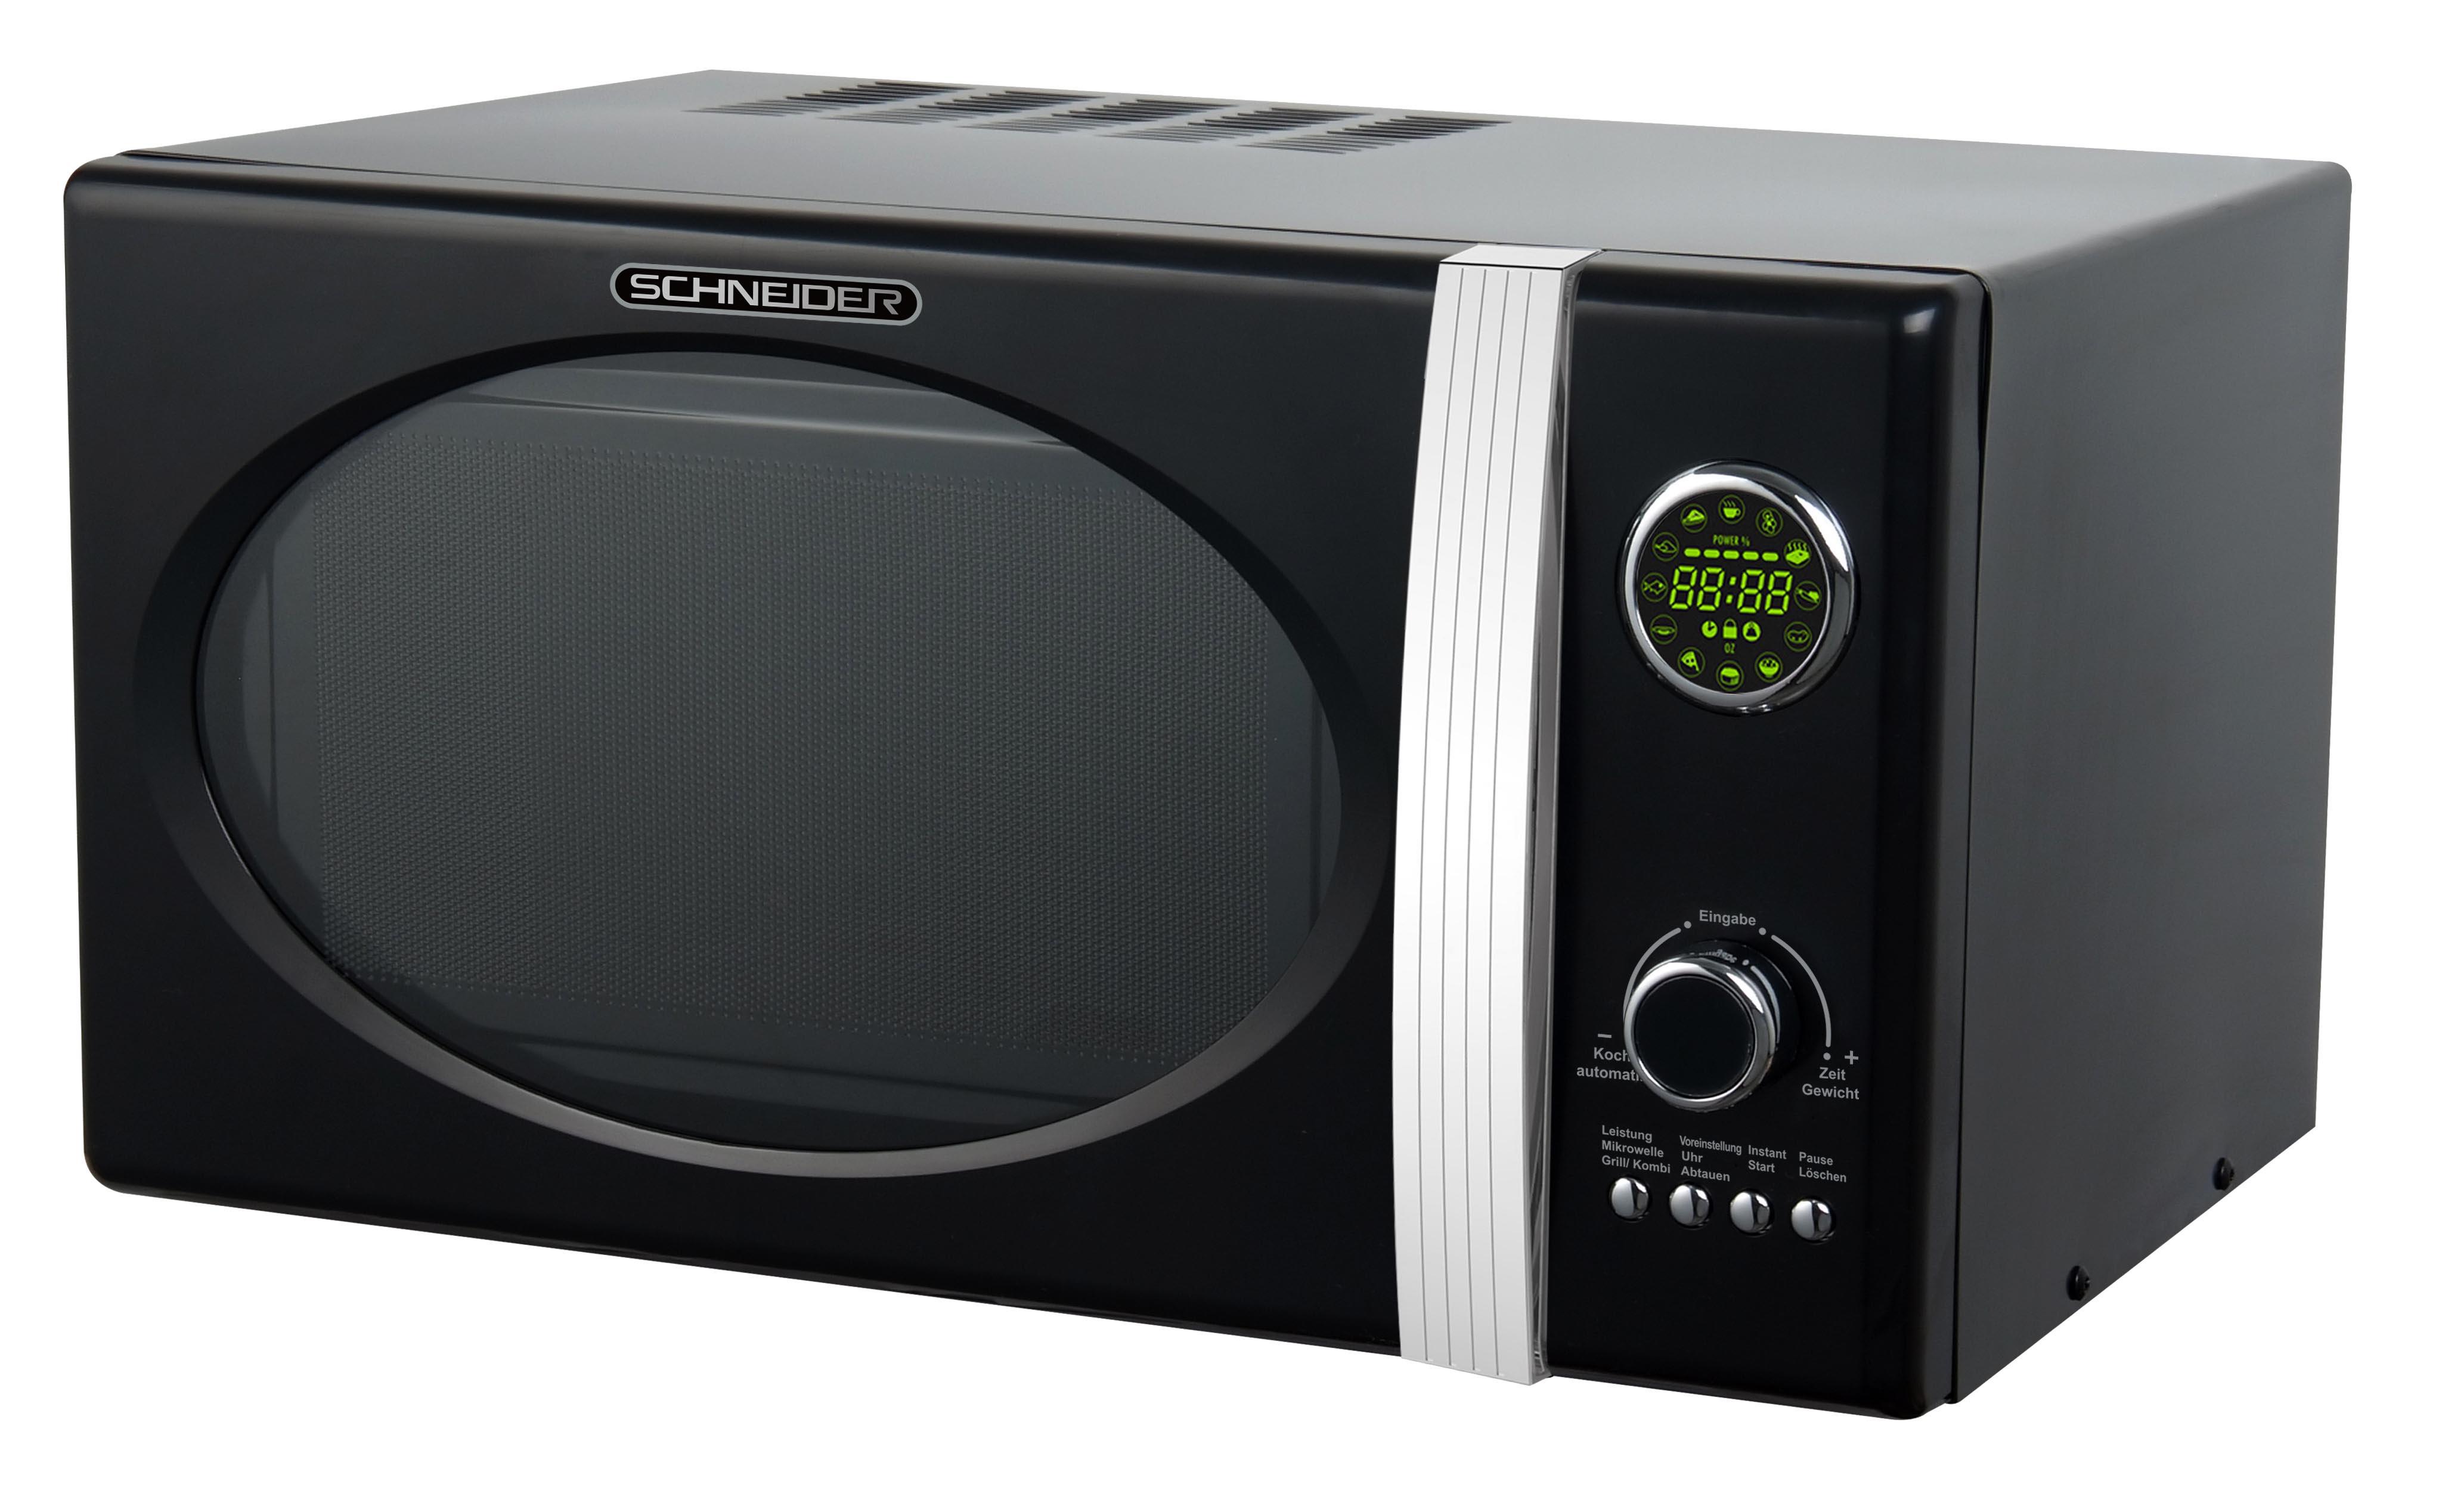 Retro Microwave oven  SCHNEIDER MW823G B, black